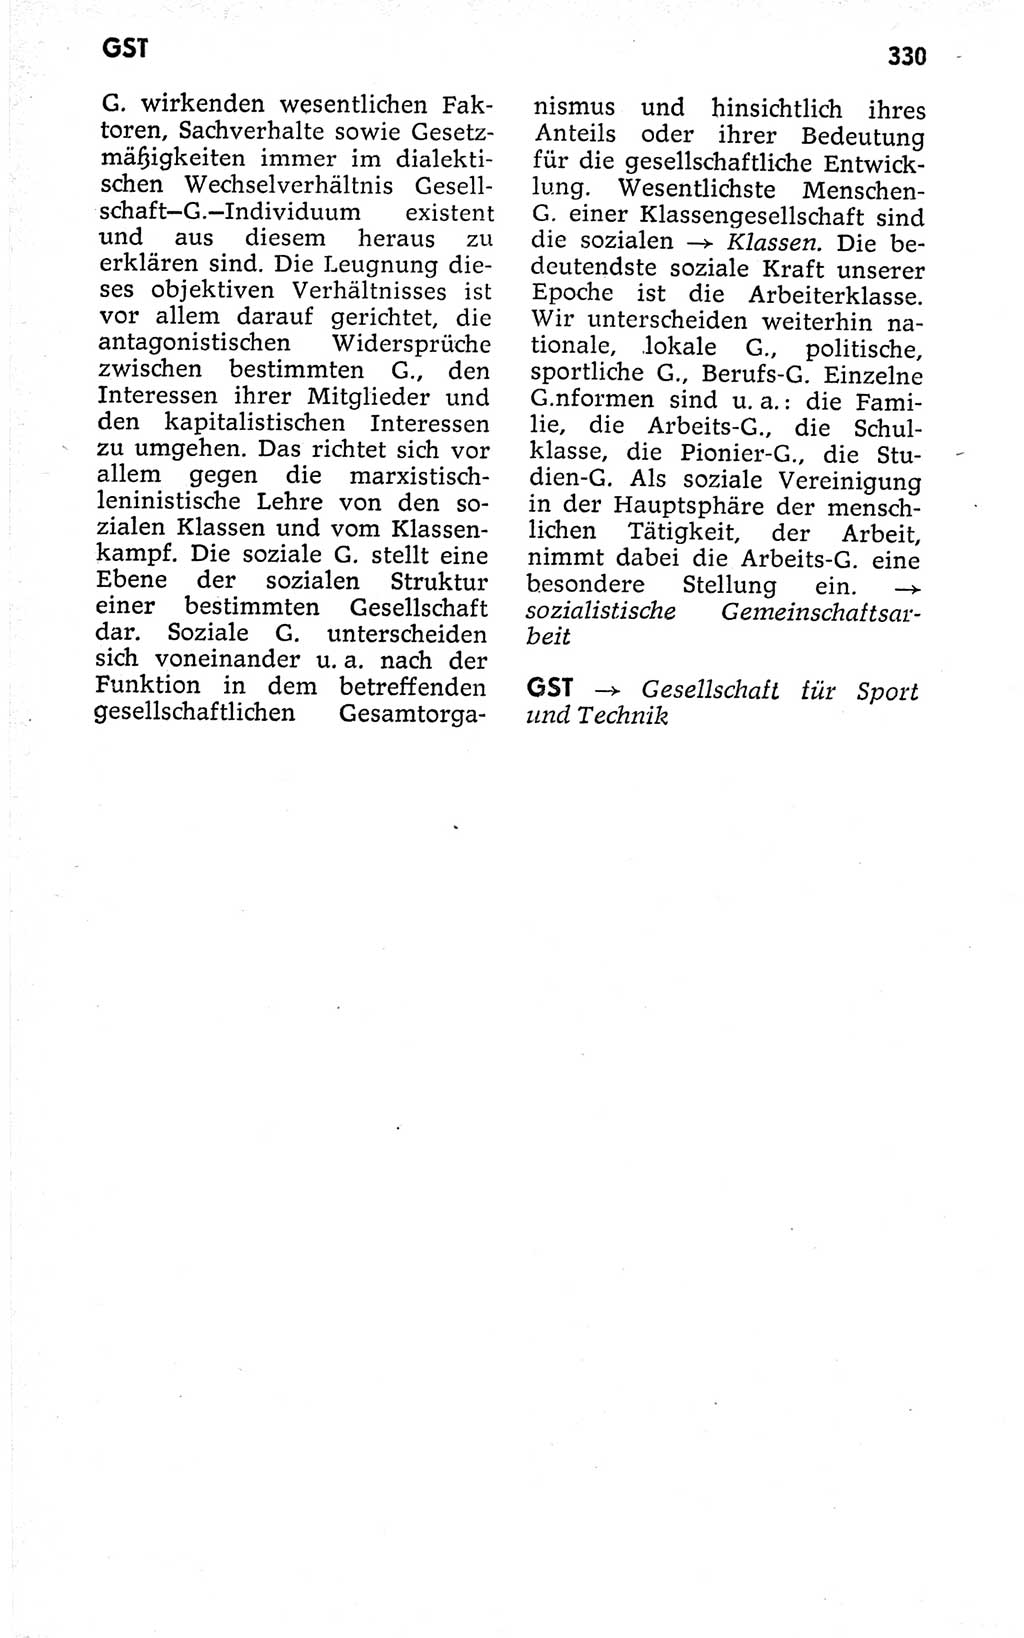 Kleines politisches Wörterbuch [Deutsche Demokratische Republik (DDR)] 1973, Seite 330 (Kl. pol. Wb. DDR 1973, S. 330)